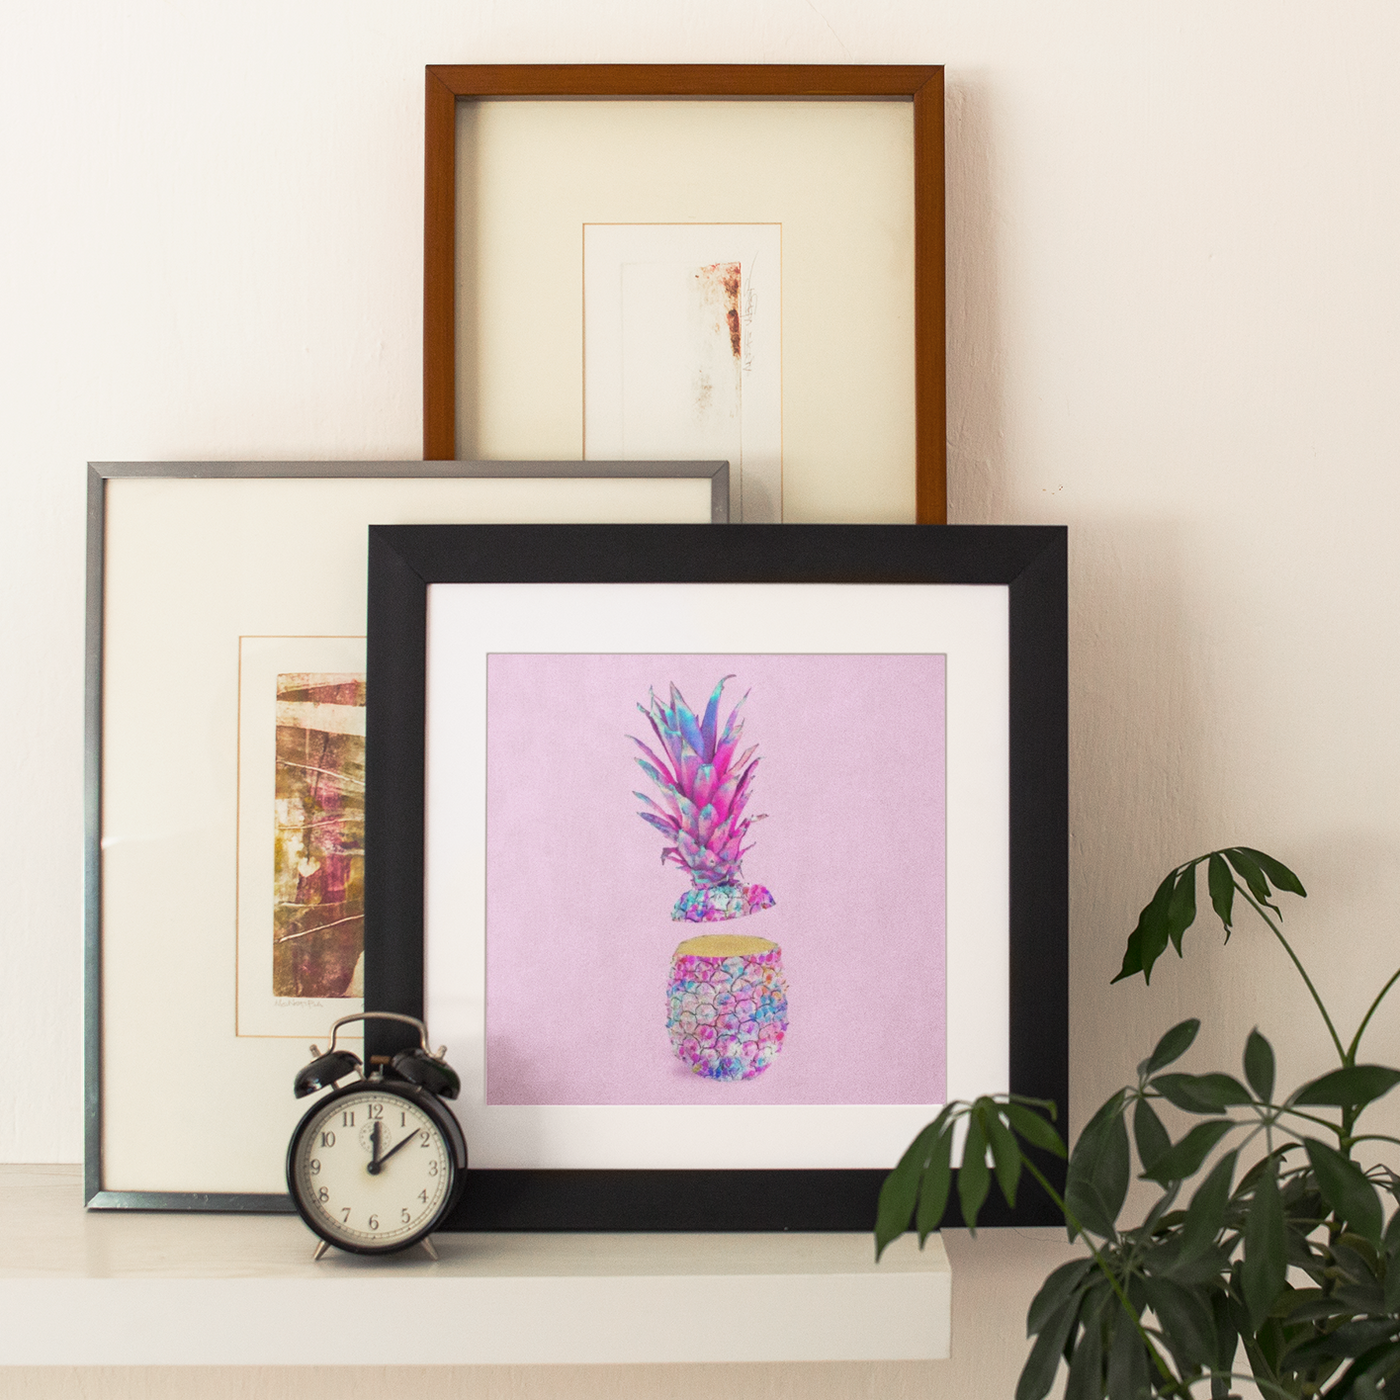 Unicorn Pineapple Framed Print